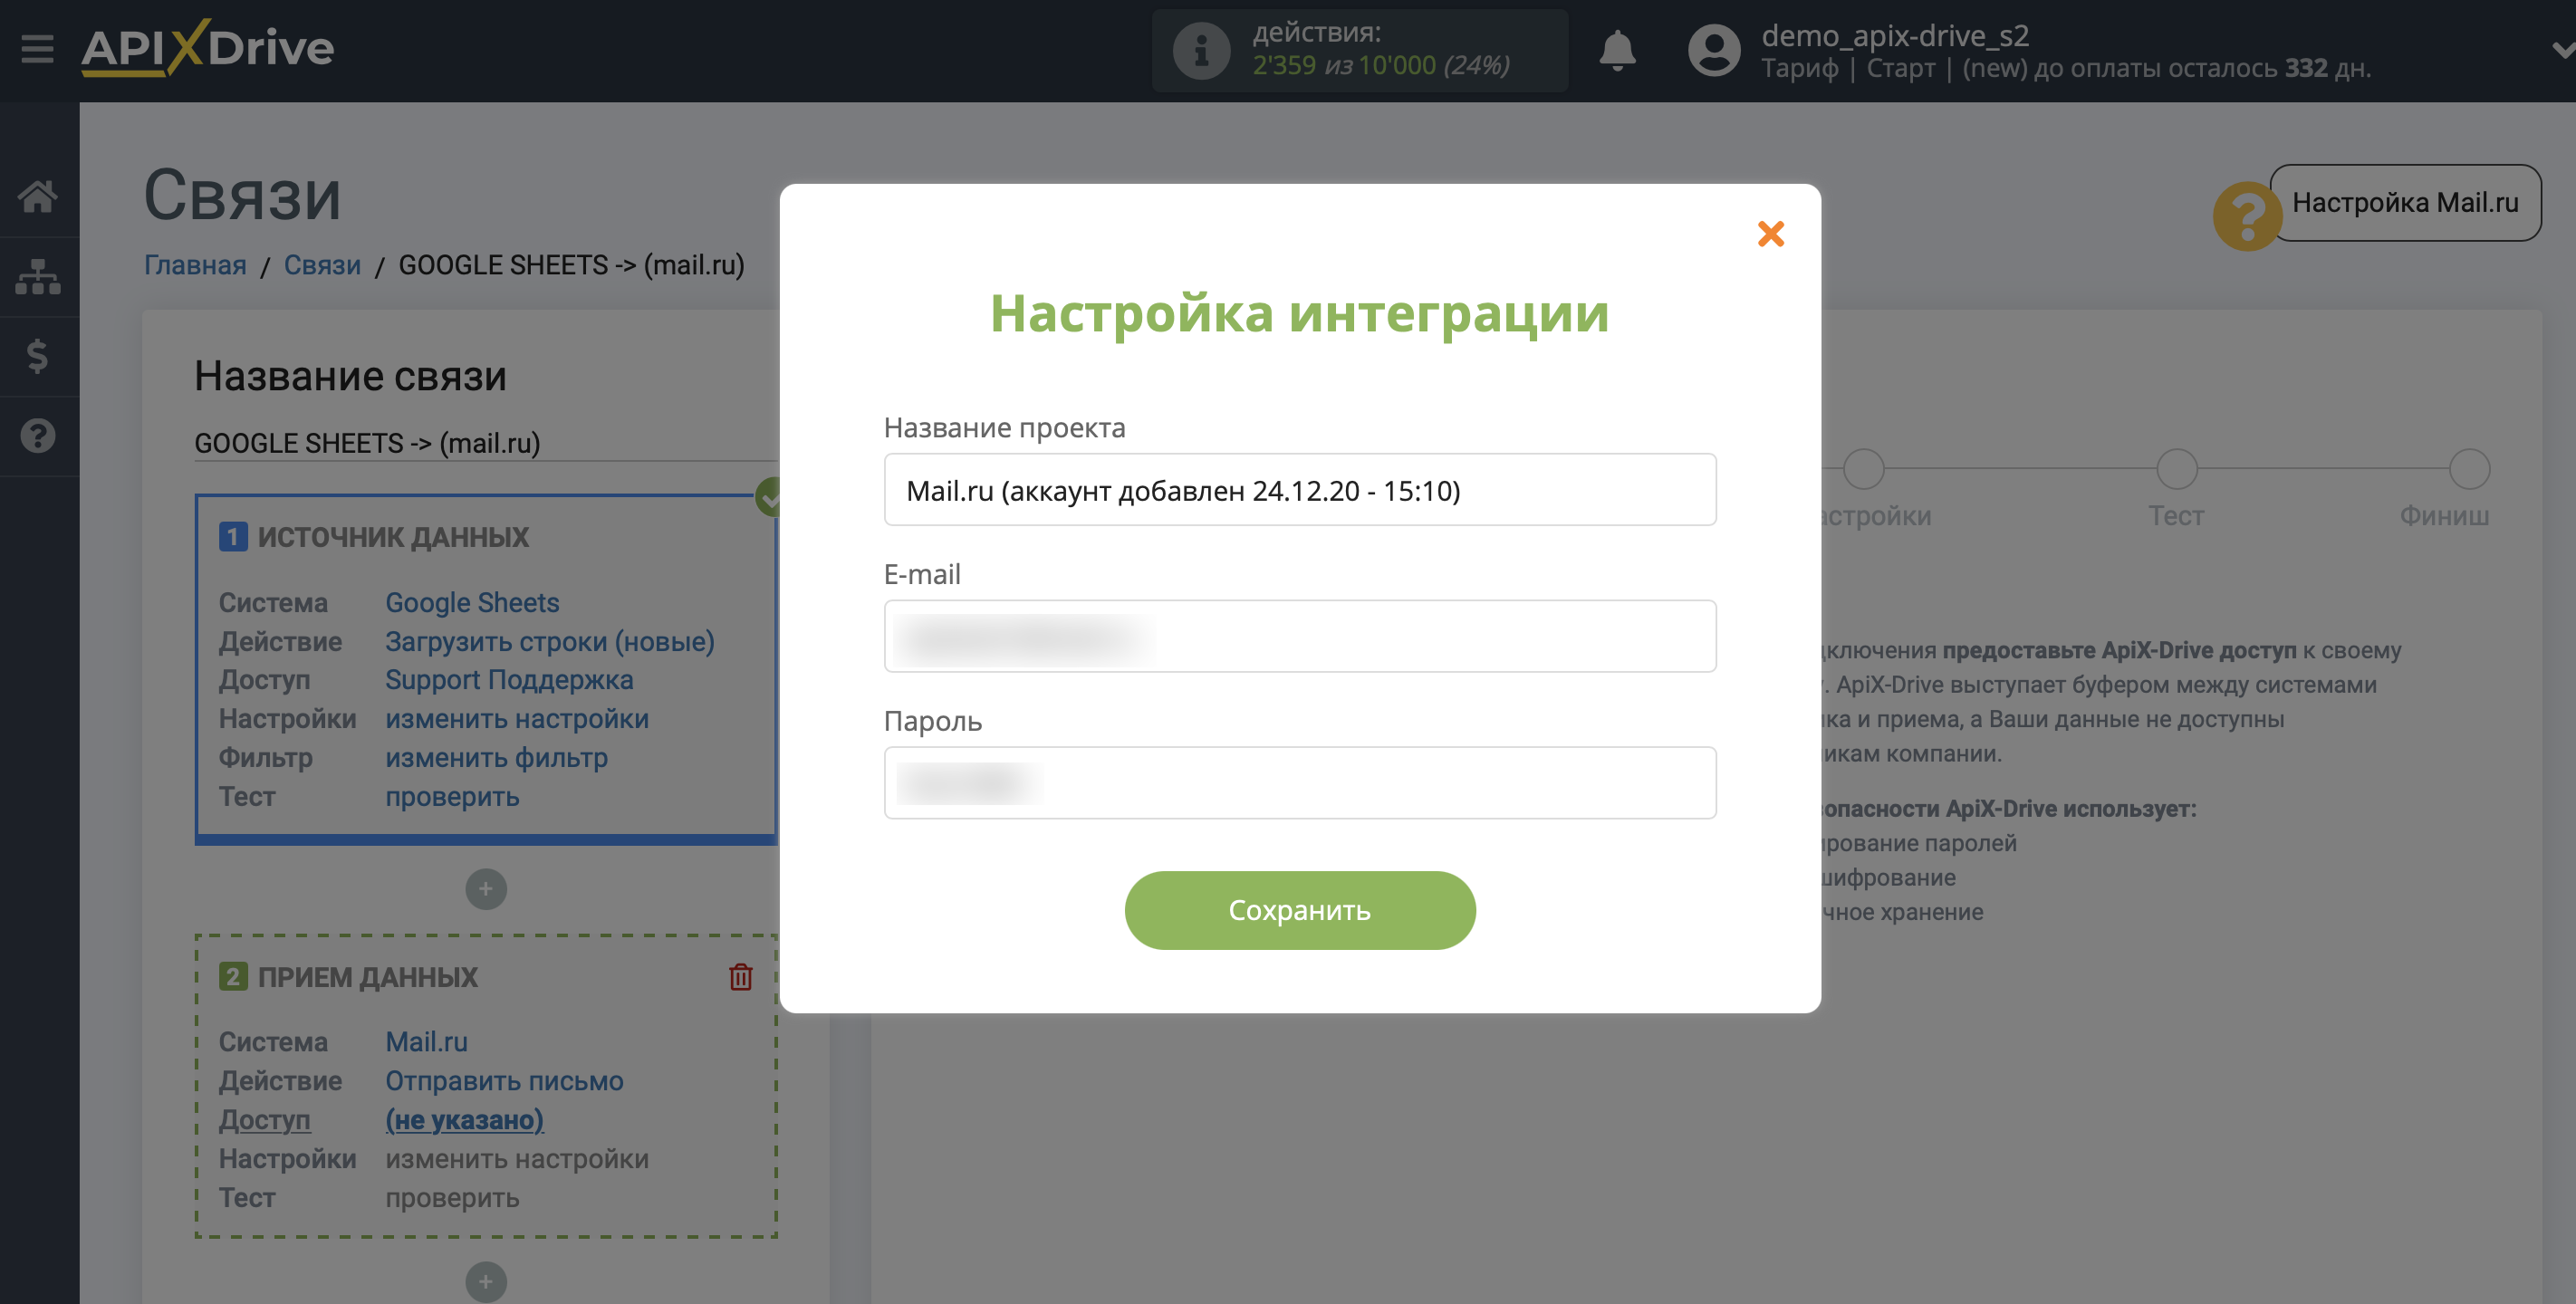 Настройка Mail.ru в качестве Приема данных | Внесение данных